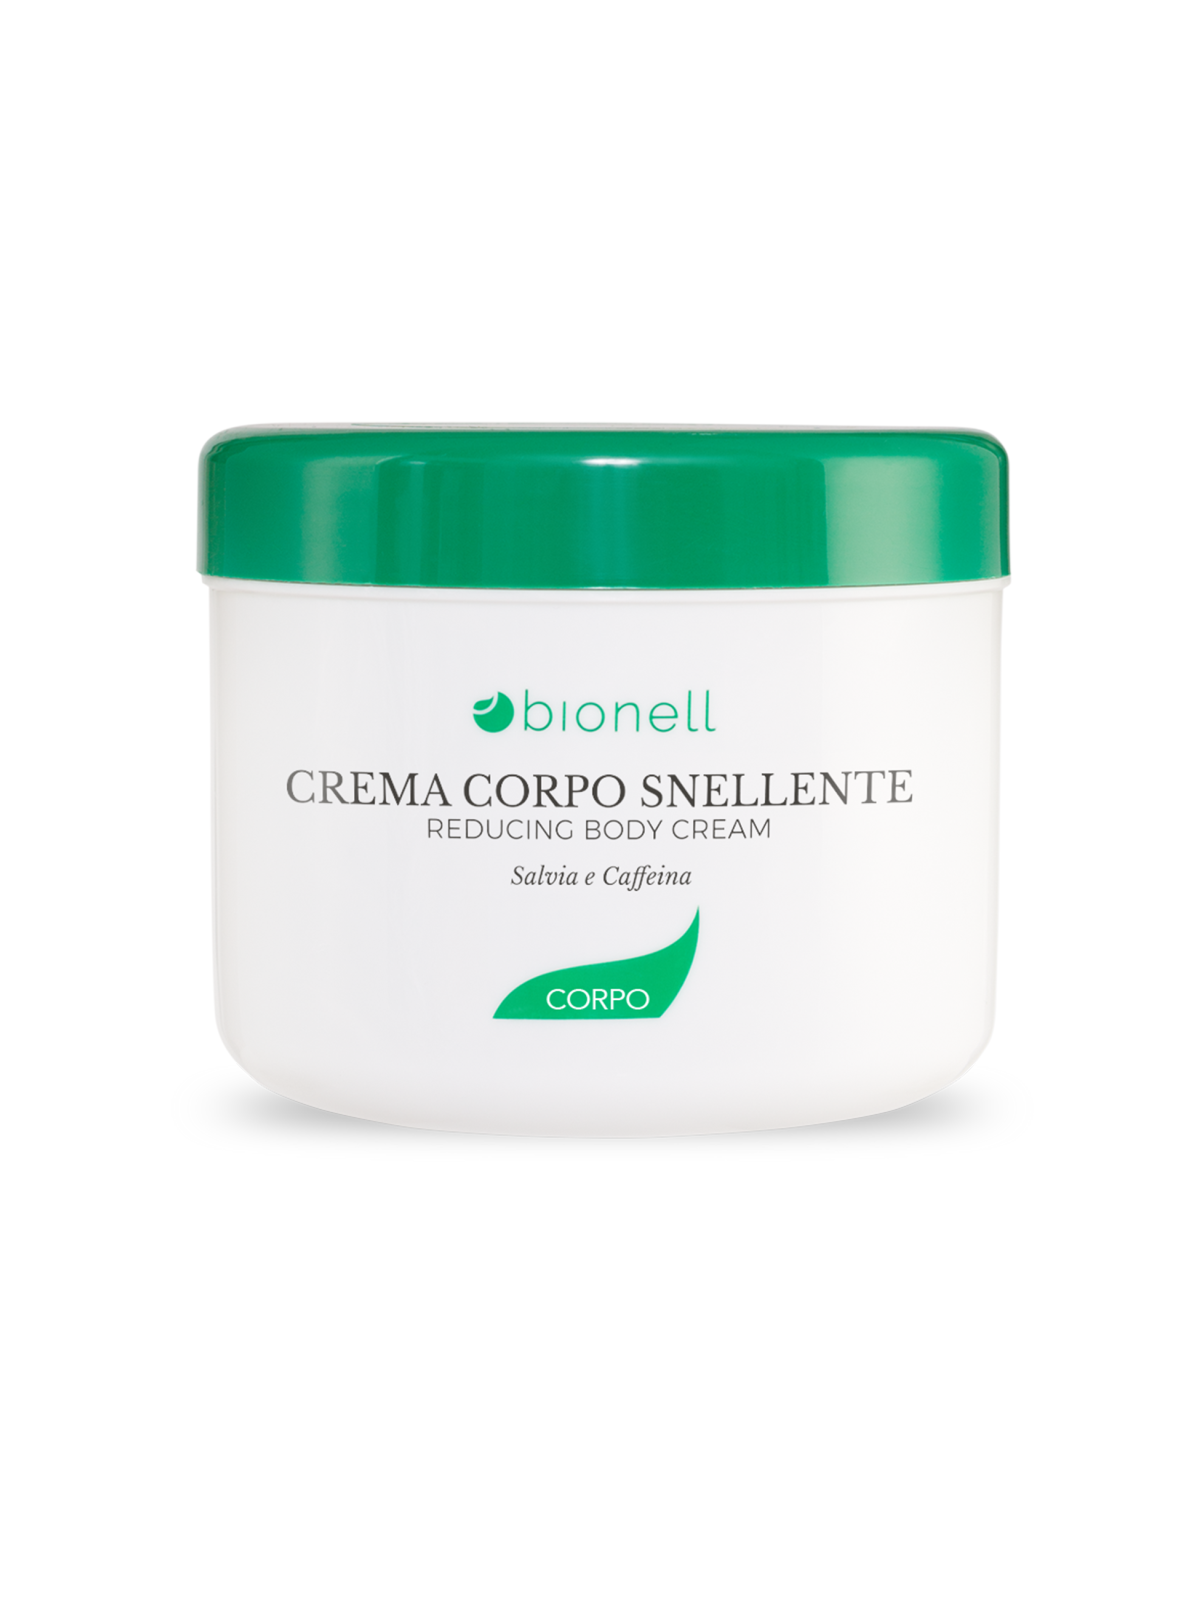 Bionell Crema corpo snellente 500 ml14,00 €